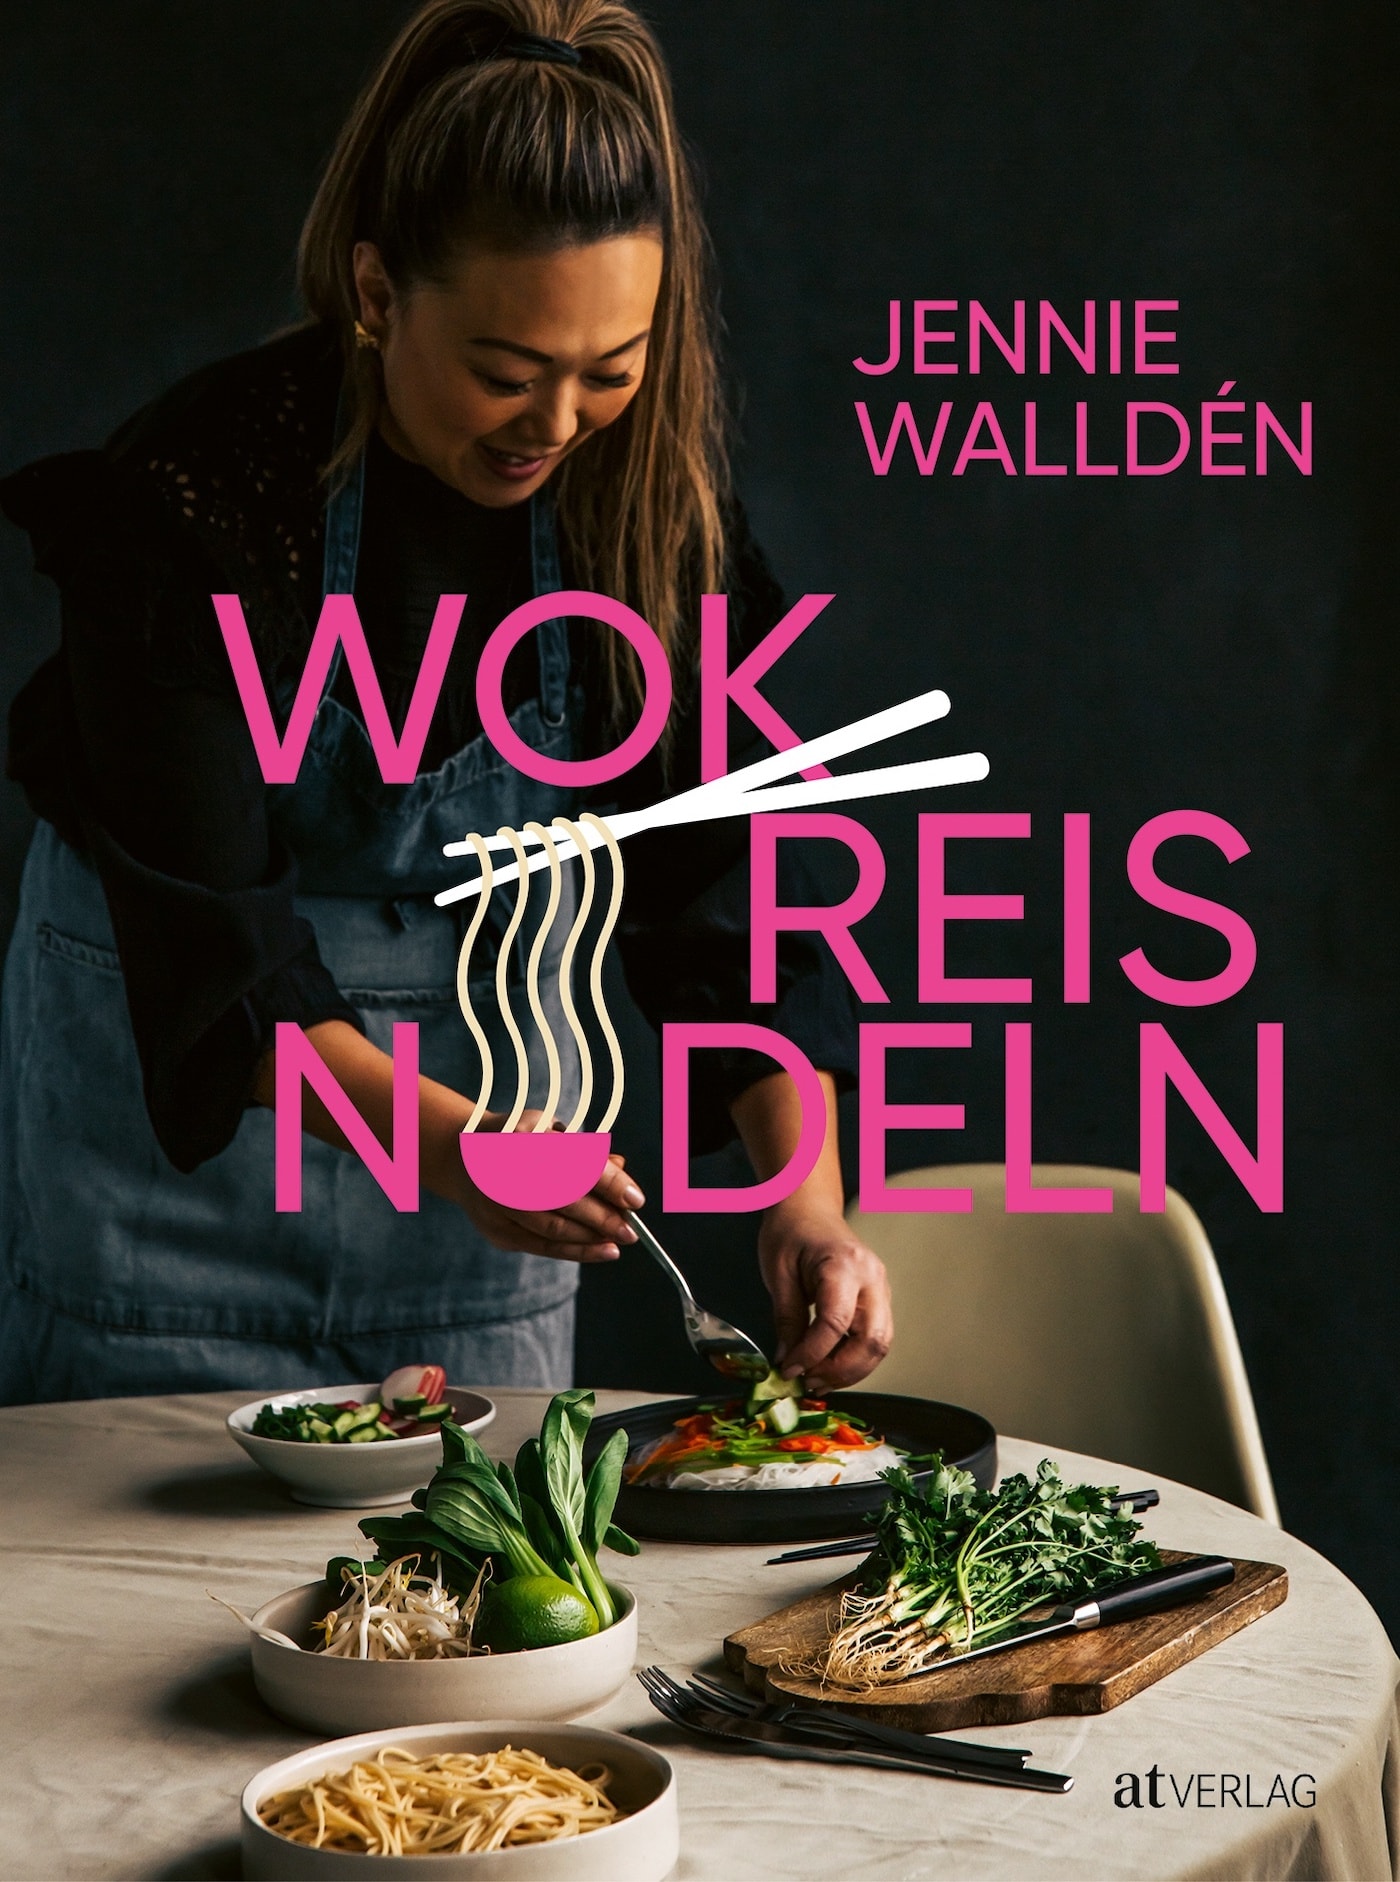 Wok Reis Nudeln C Petterbaecklund Atverlag Www At Verlag Ch